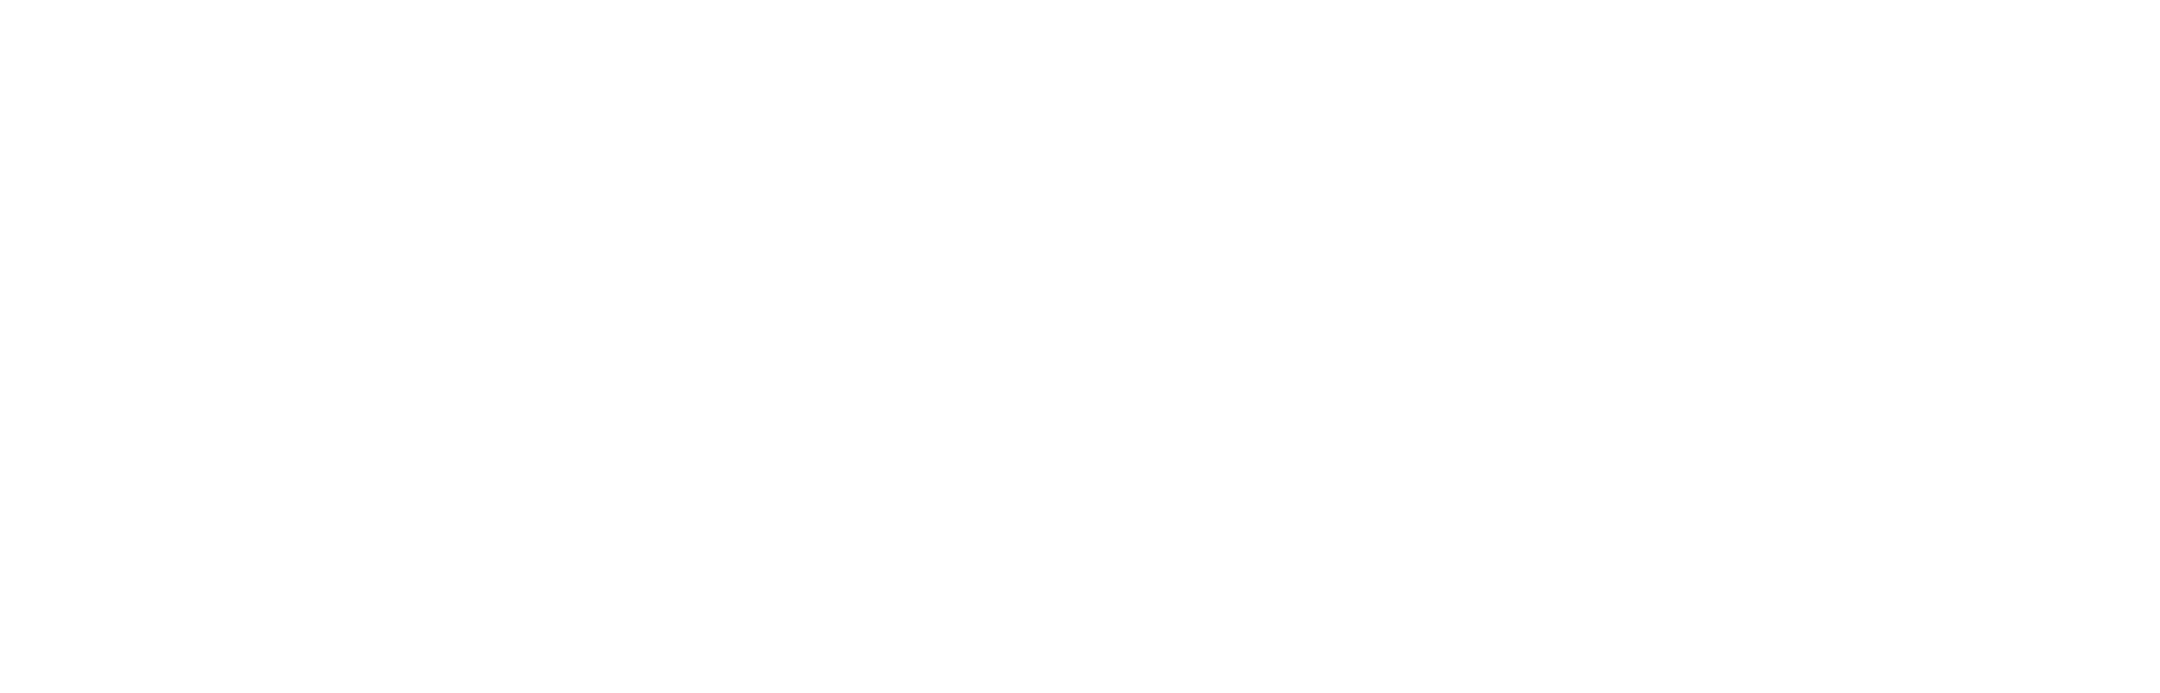 Epyflora